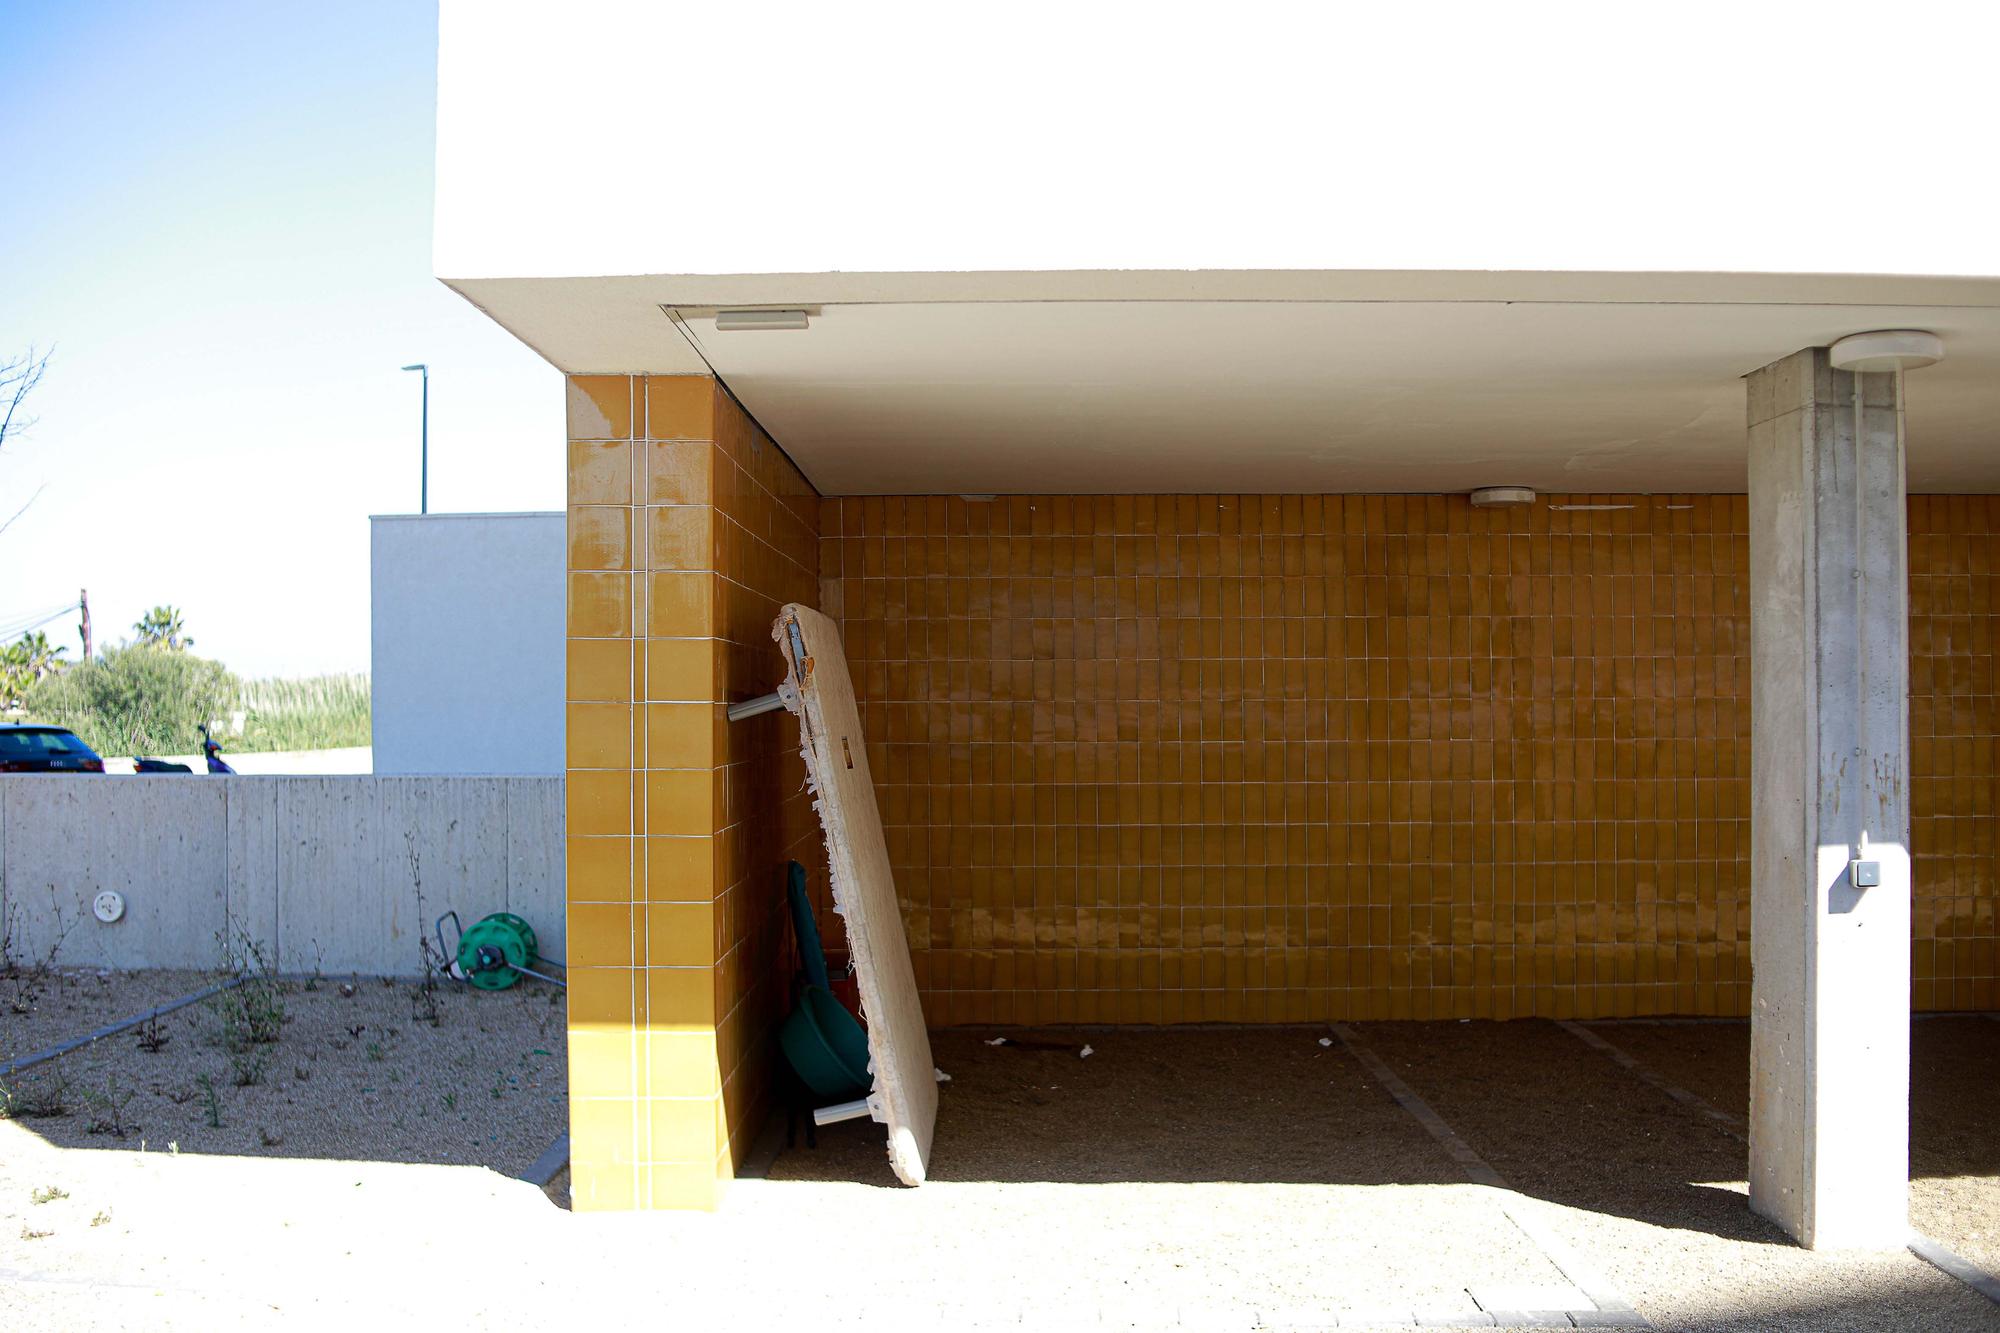 Galería de imágenes de los desperfectos de las viviendas sociales de Ibiza